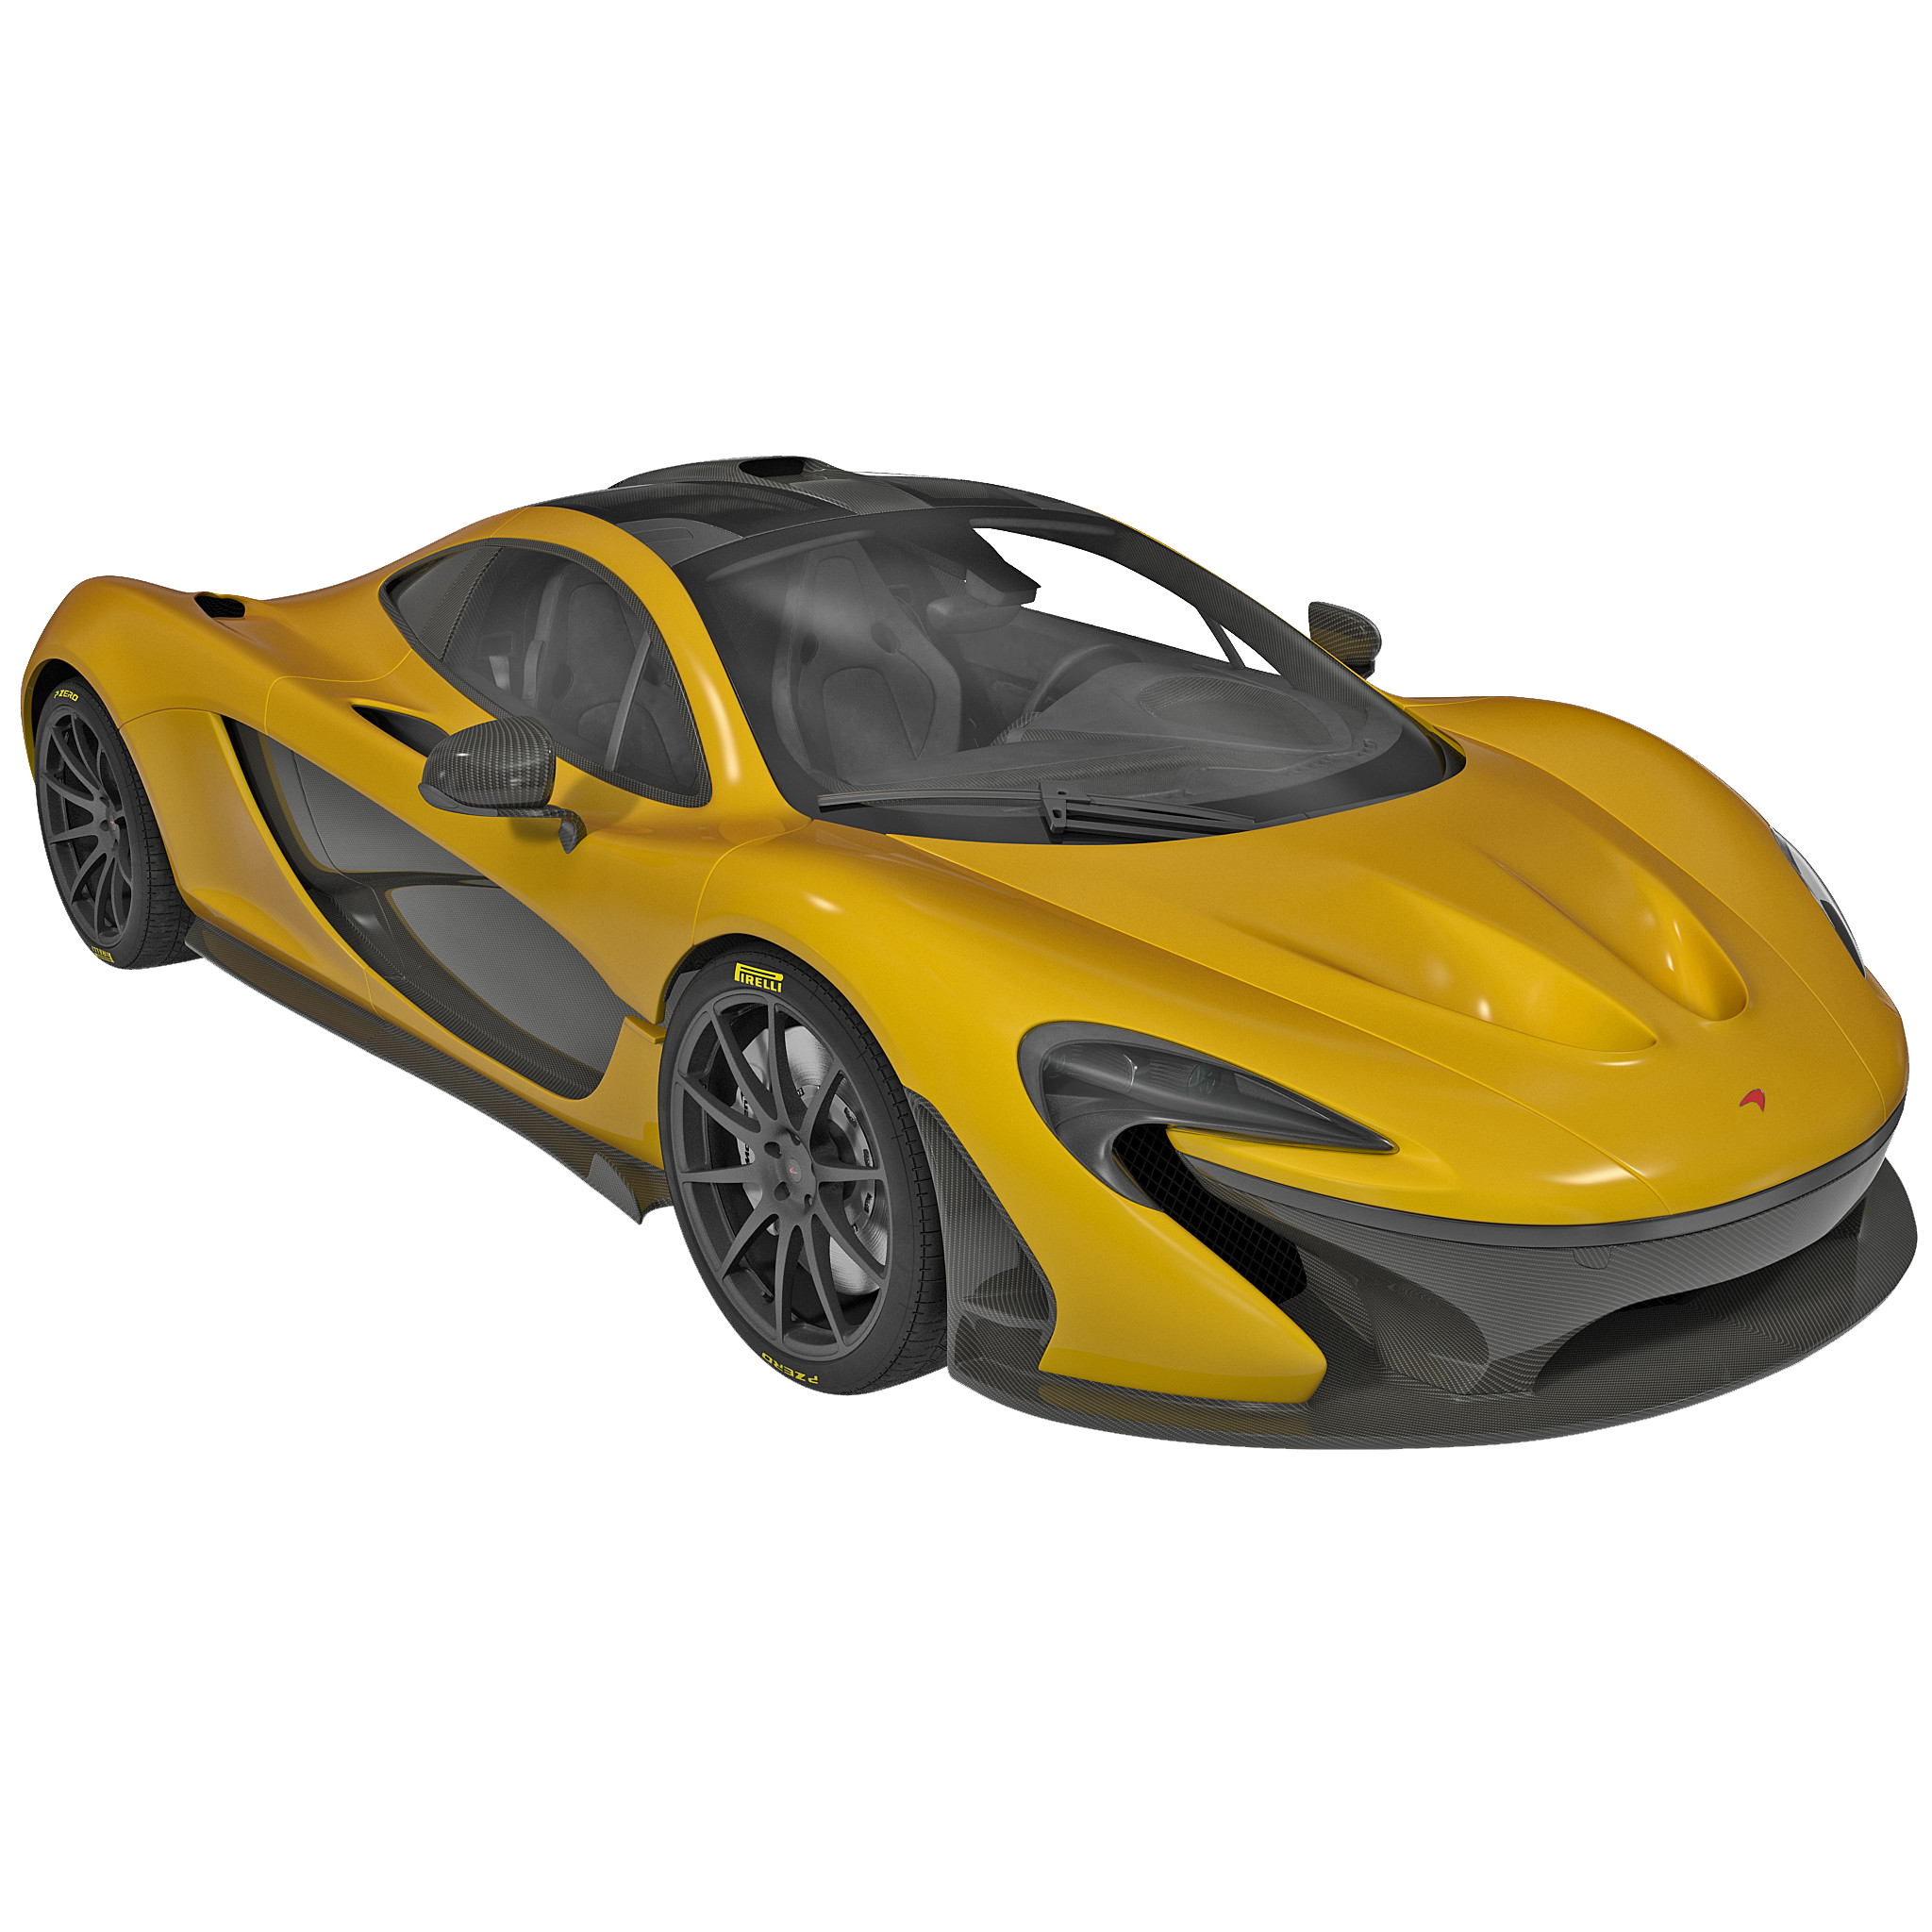 McLaren P1 PNG Transparent Images | PNG All